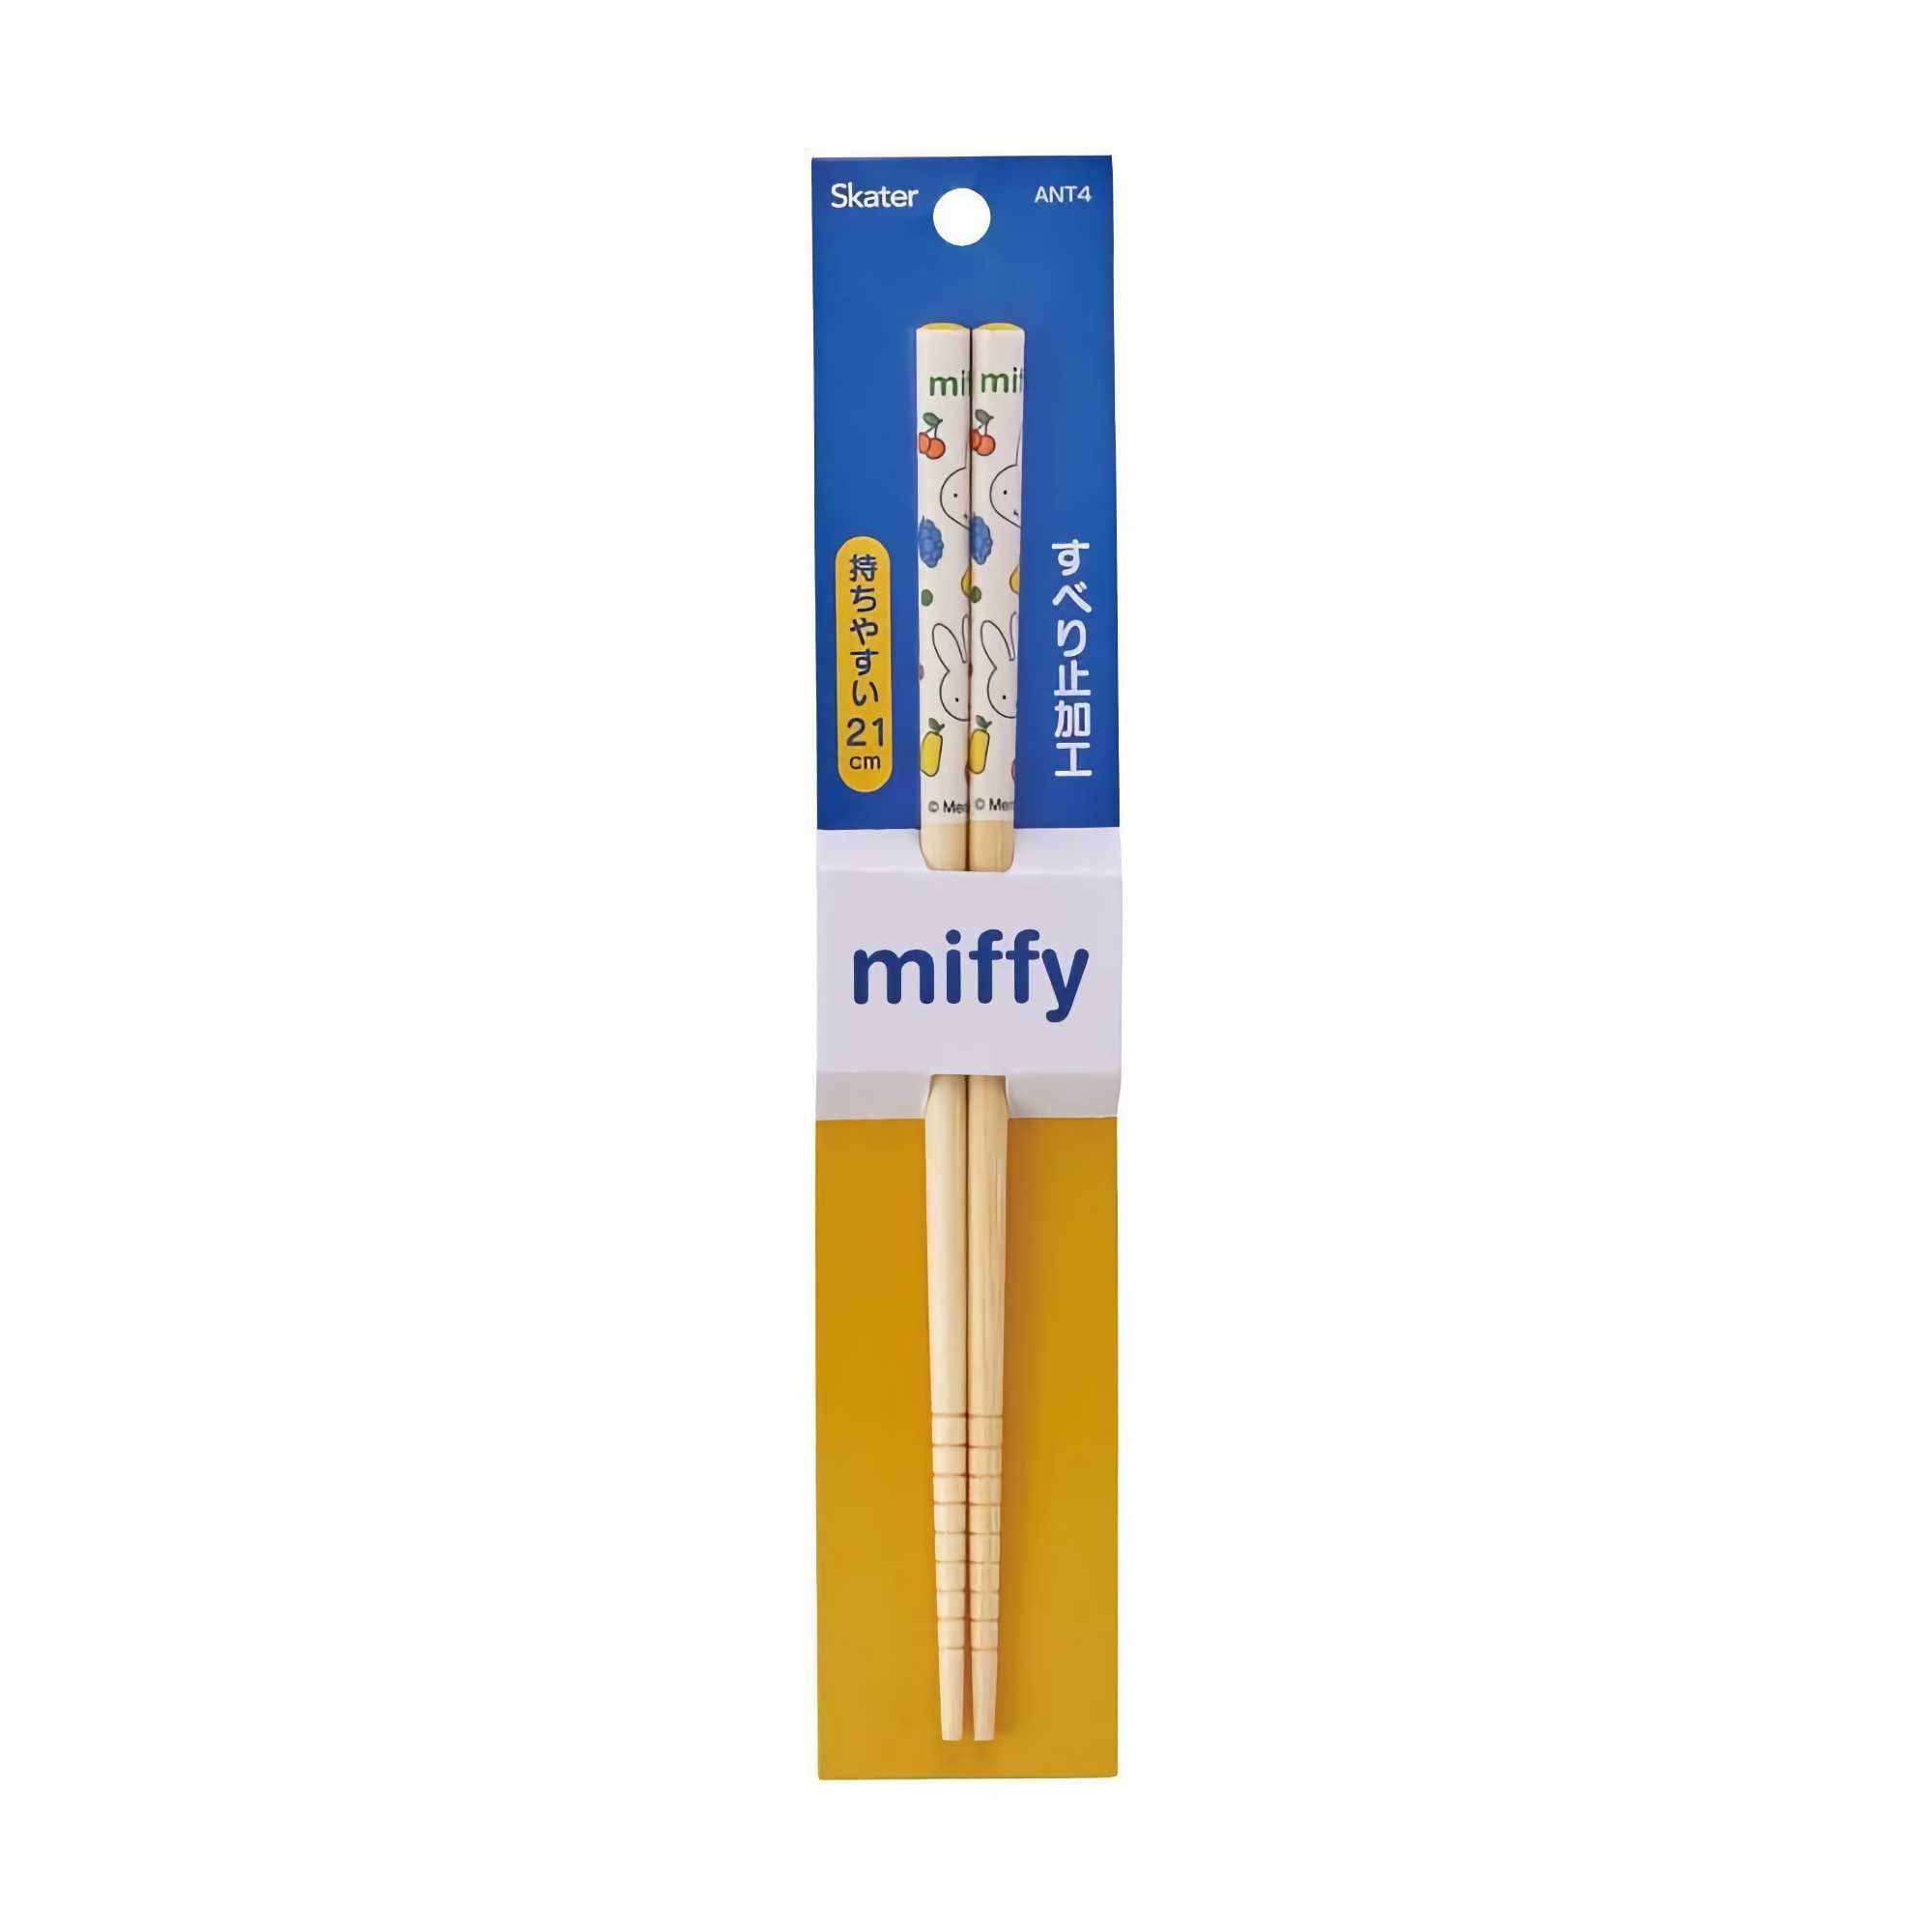 Miffy Chopsticks, Fruit